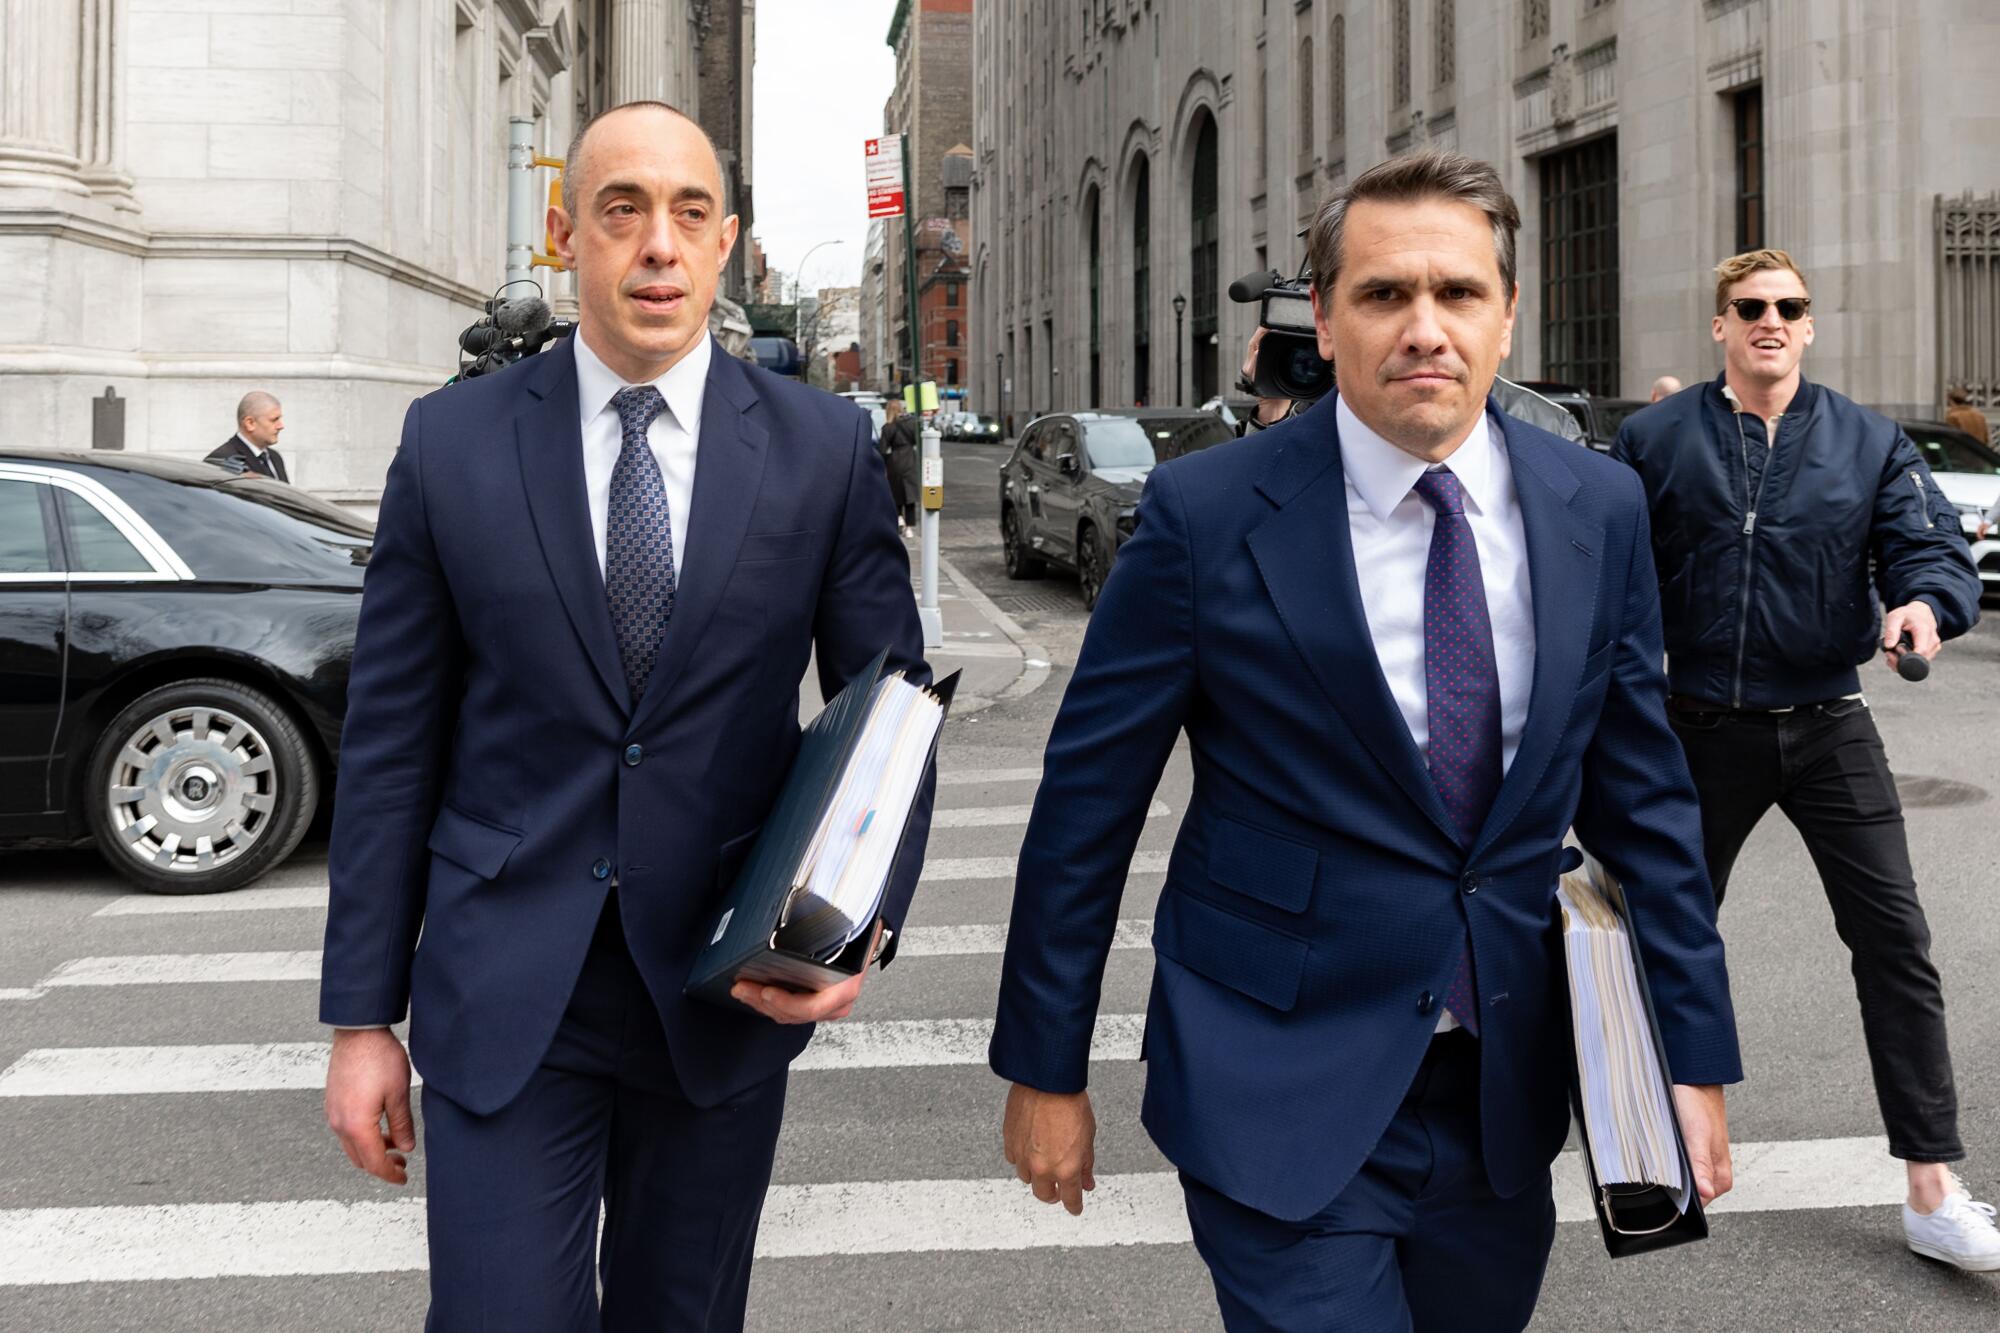 Dois homens em ternos azuis com pastas grossas atravessam uma rua da cidade, enquanto um homem segurando um microfone tenta alcançá-los.